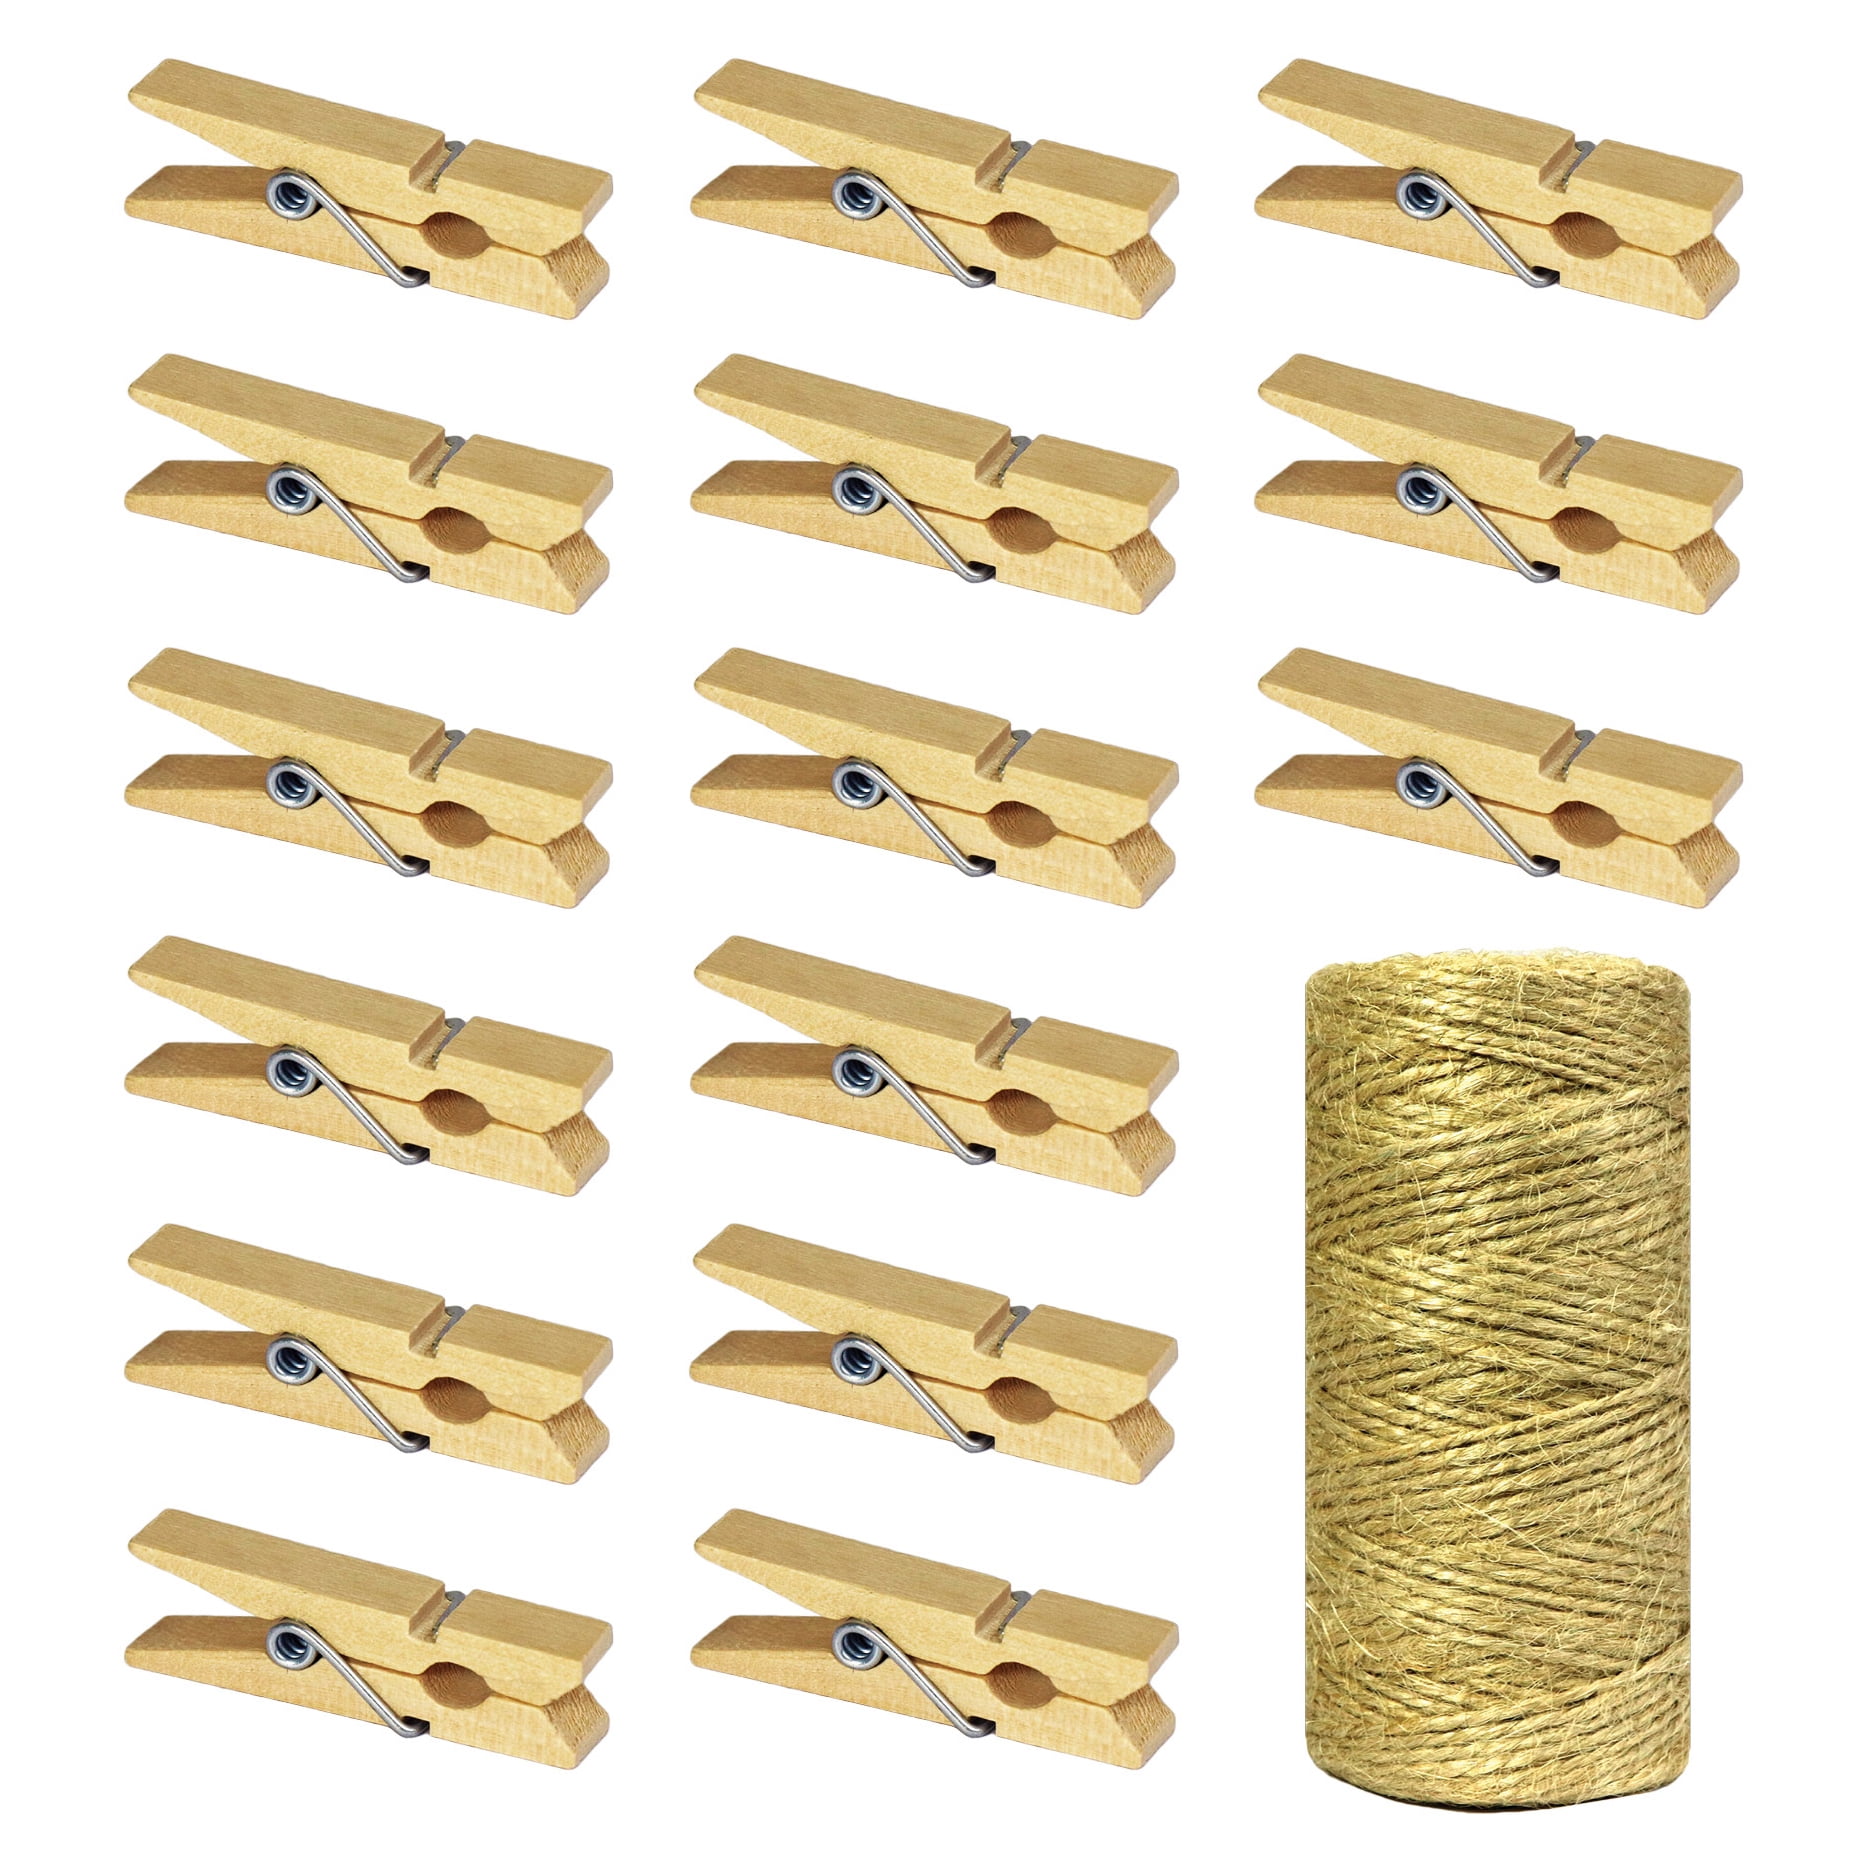 100pcs Natural Wooden Clothes Pins Mini Wooden Clips Decorative